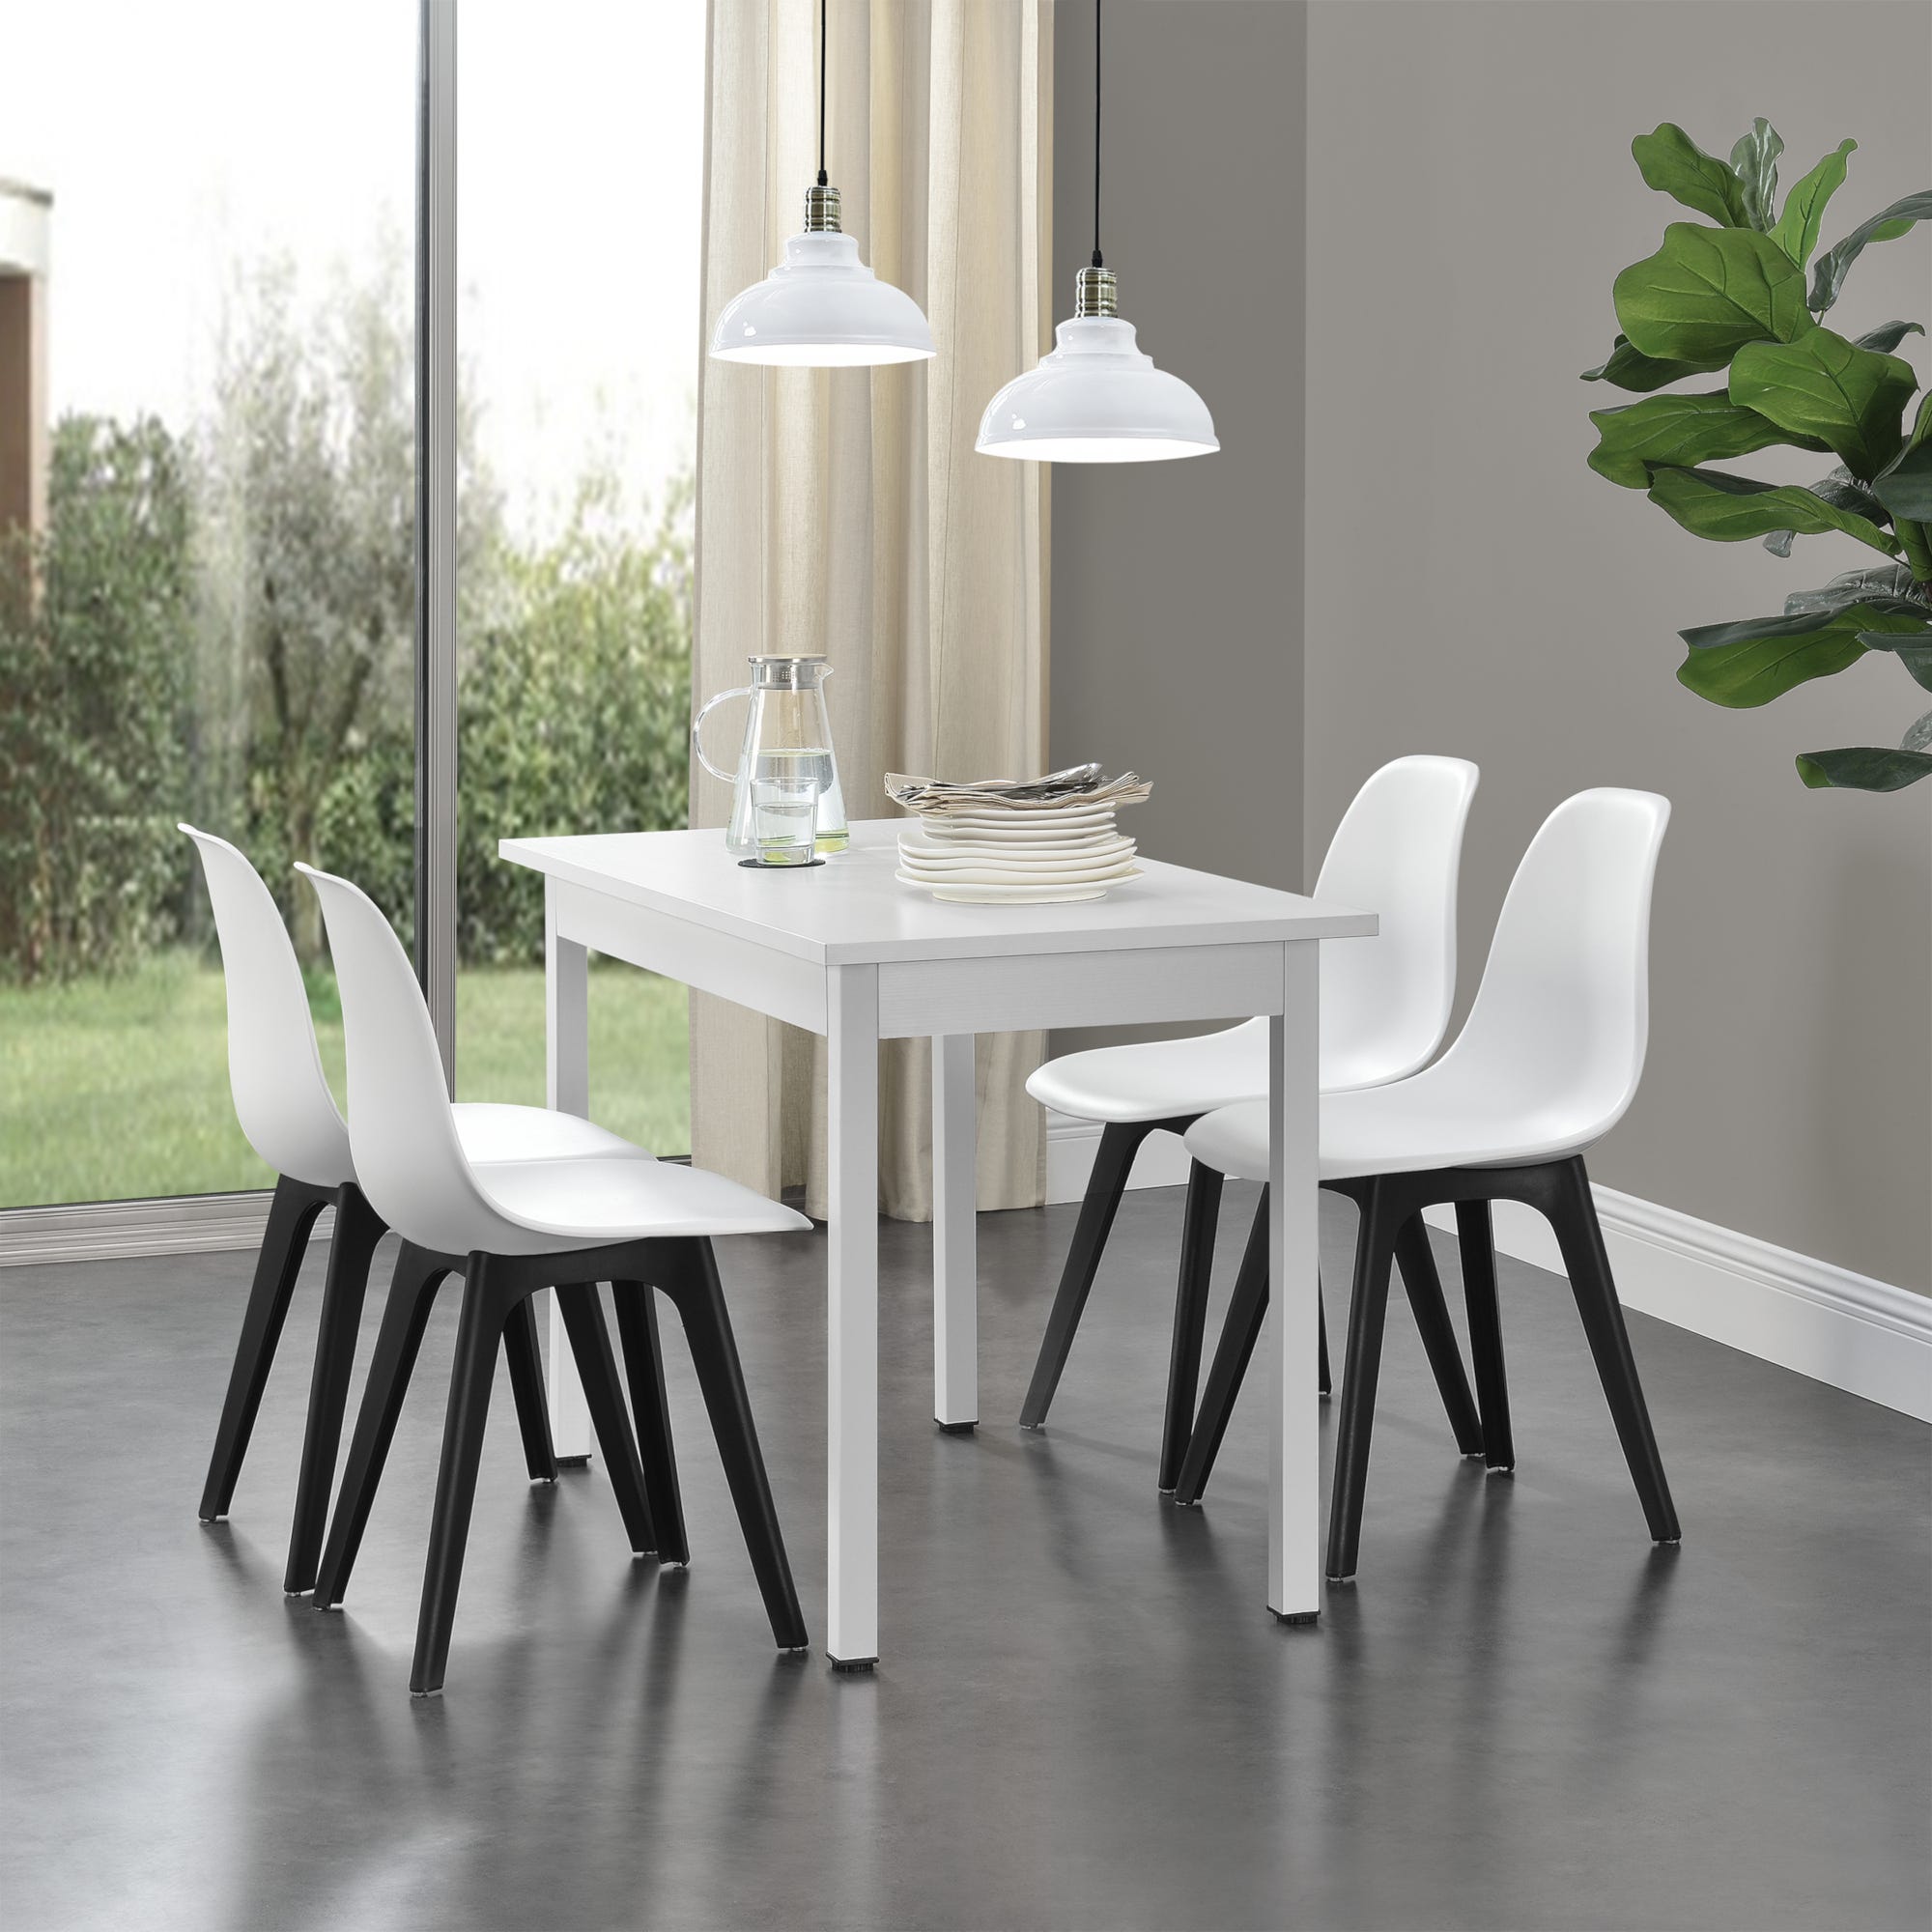 GAIA Home Design - Mesa laqueada + sillas de resina sintética mesa 120 x 70  cm. c/2 sillas $ 3700 mesa 120 x 70 cm. c/4 sillas $ 5200 mesa 120 x 80 cm.  c/2 sillas $ 3800 mesa 120 x 80 cm. c/4 sillas $ 5300